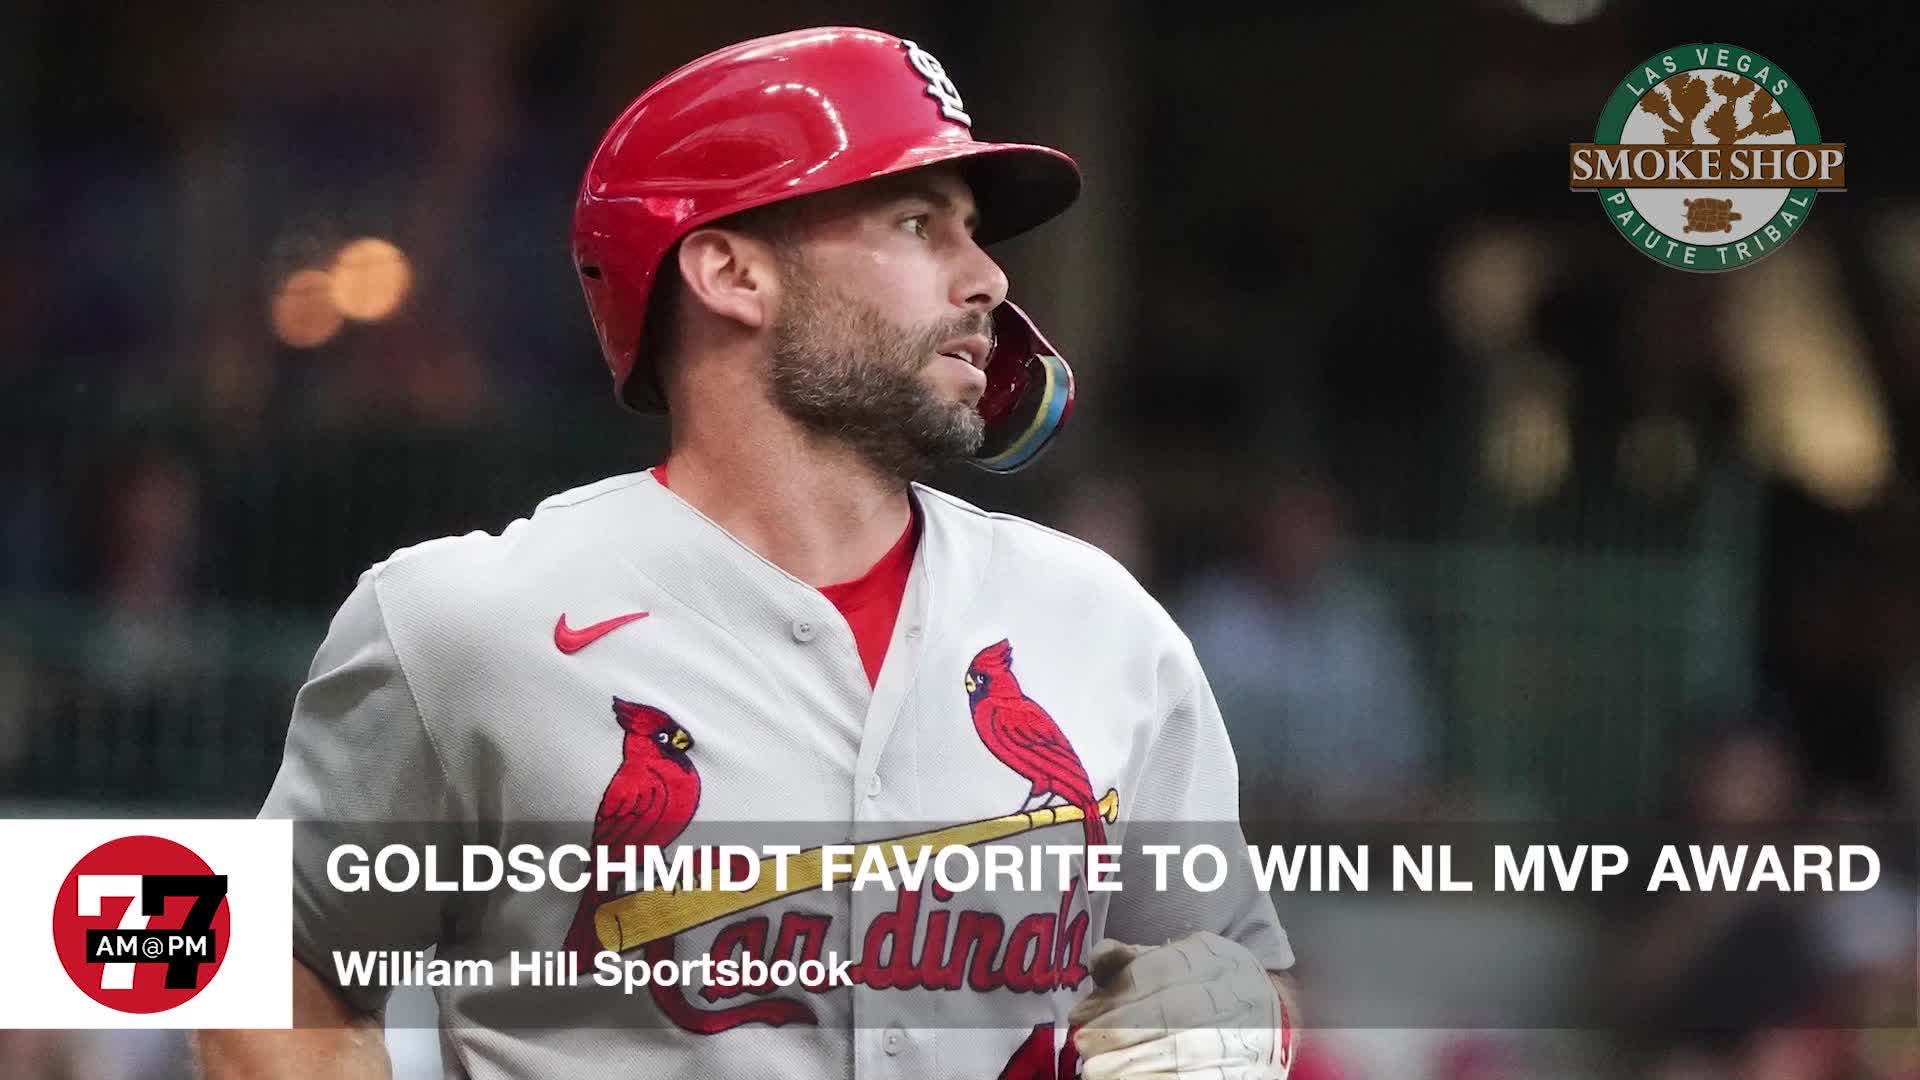 Goldschmidt favorite to win NL MVP